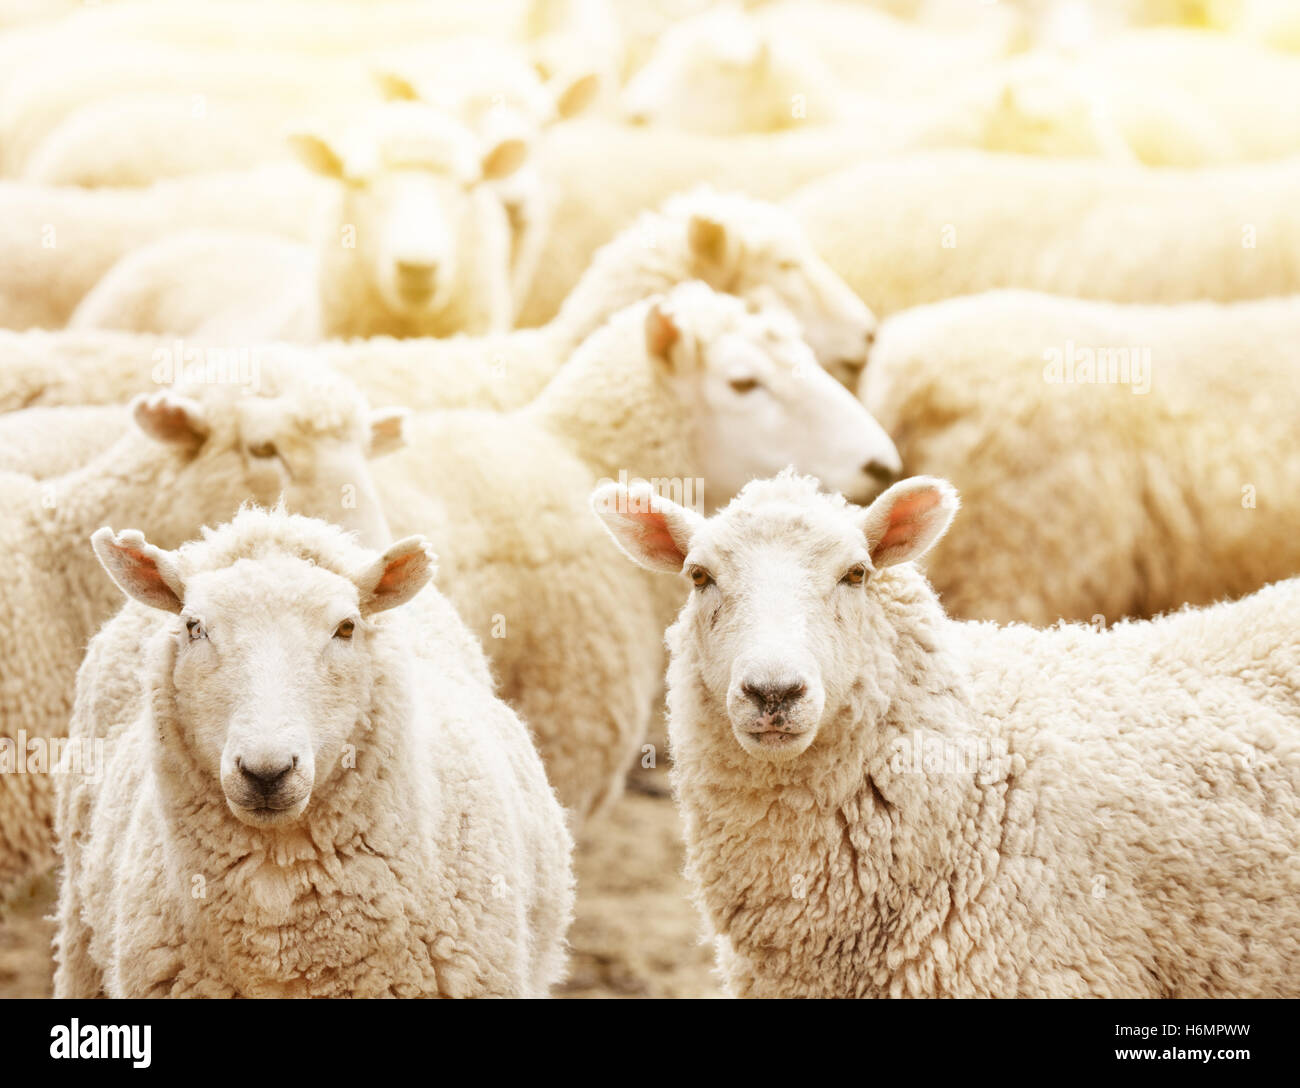 Ferme d'élevage, troupeau de moutons Banque D'Images